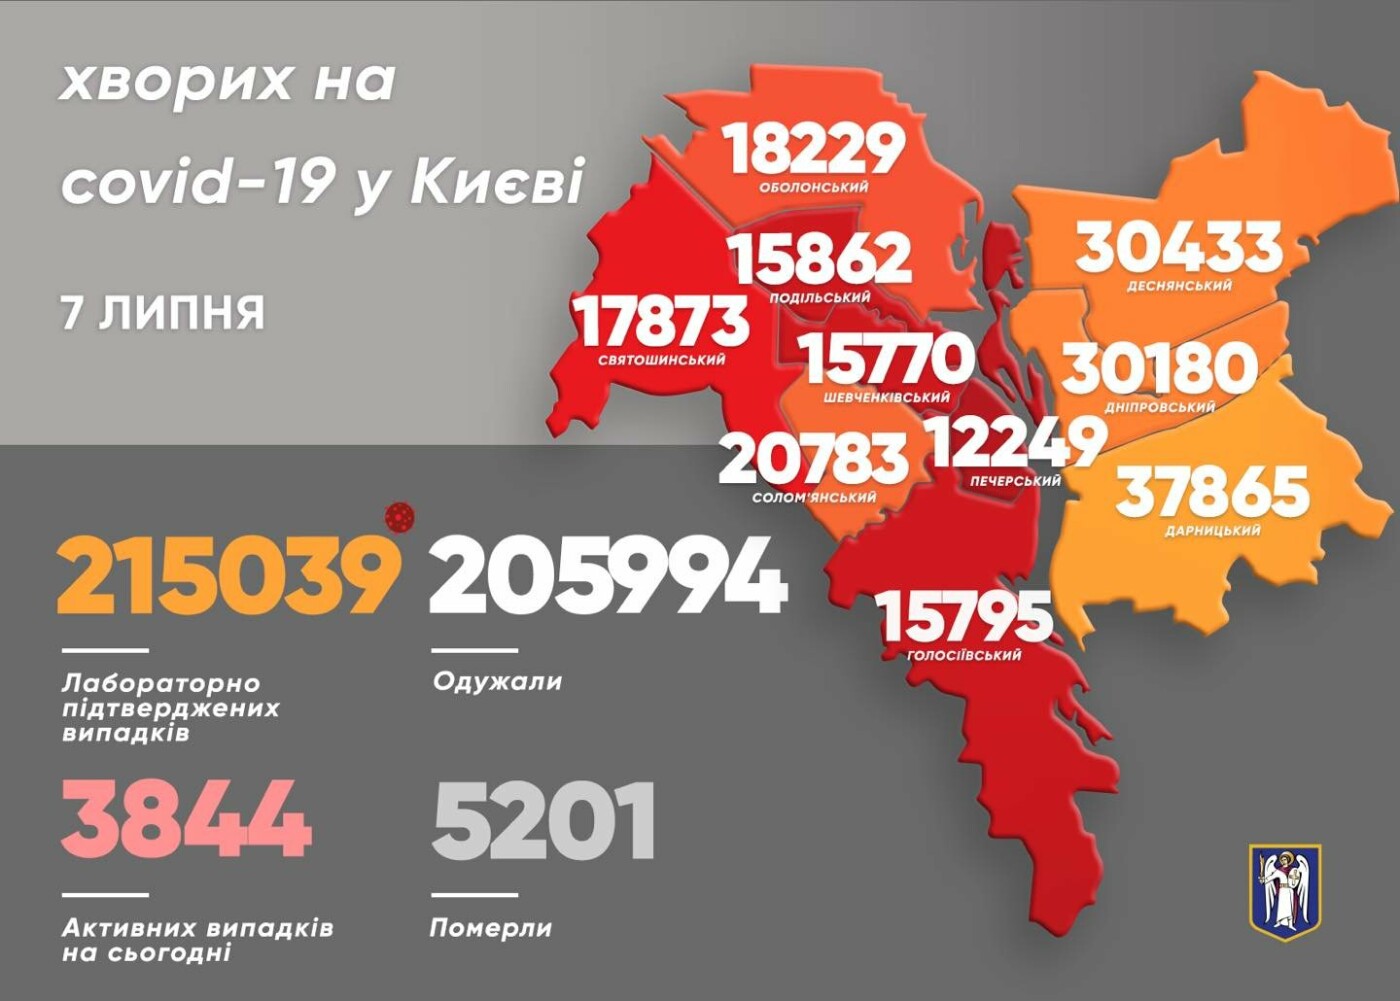 Коронавирус в Киеве: появилась статистика COVID-19 по районам на 7 июля